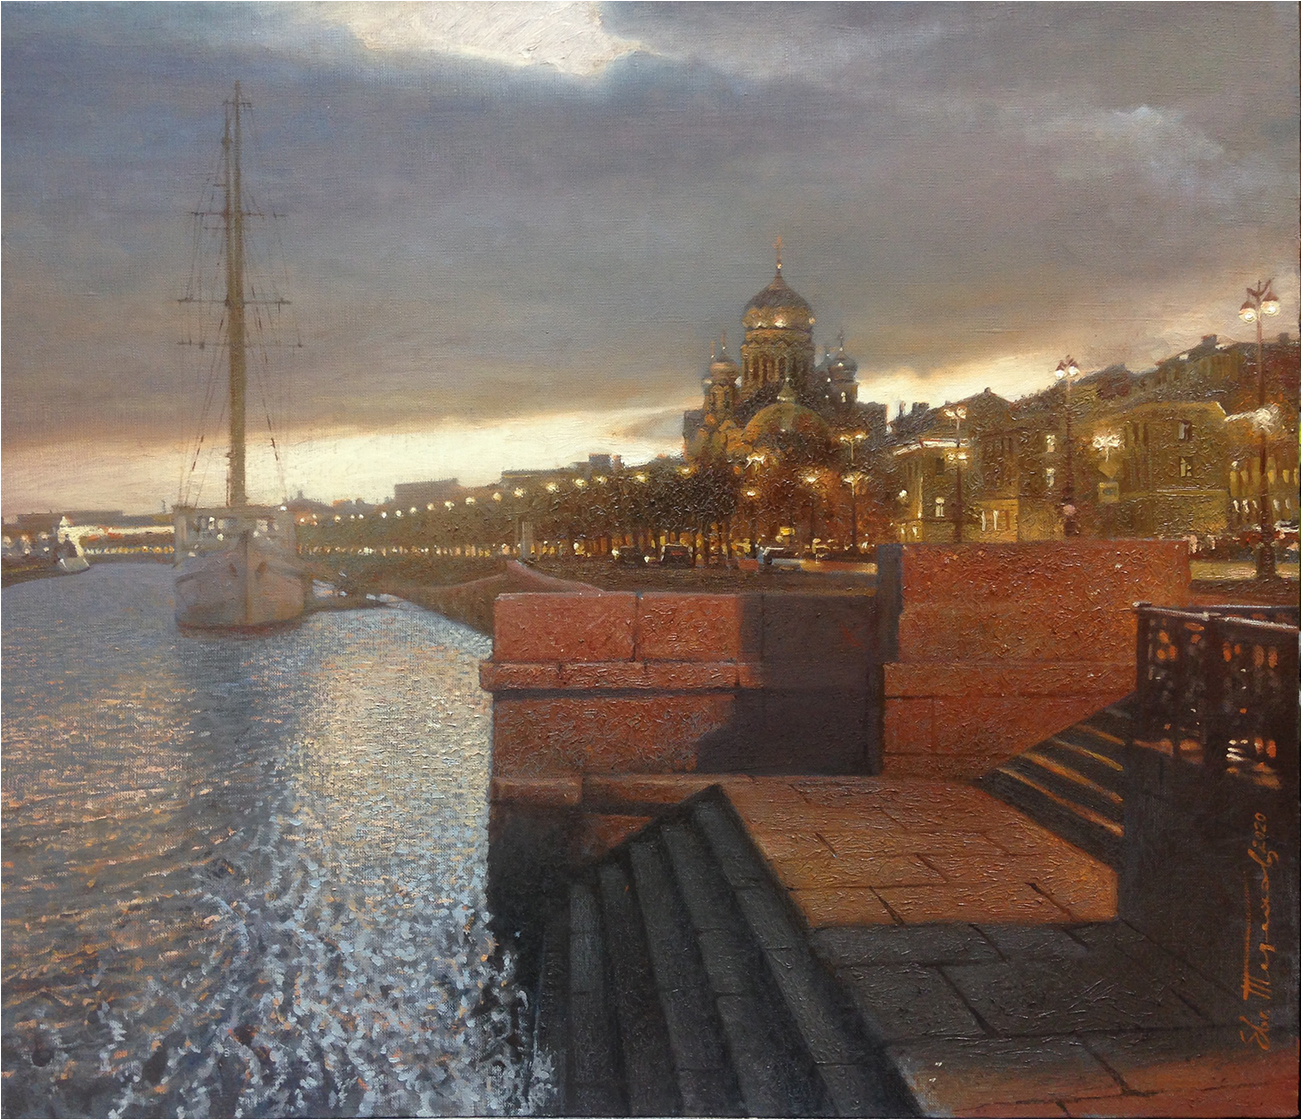 Lieutenant Schmidt Embankment - 1, Eugene Terekhov, Buy the painting Oil